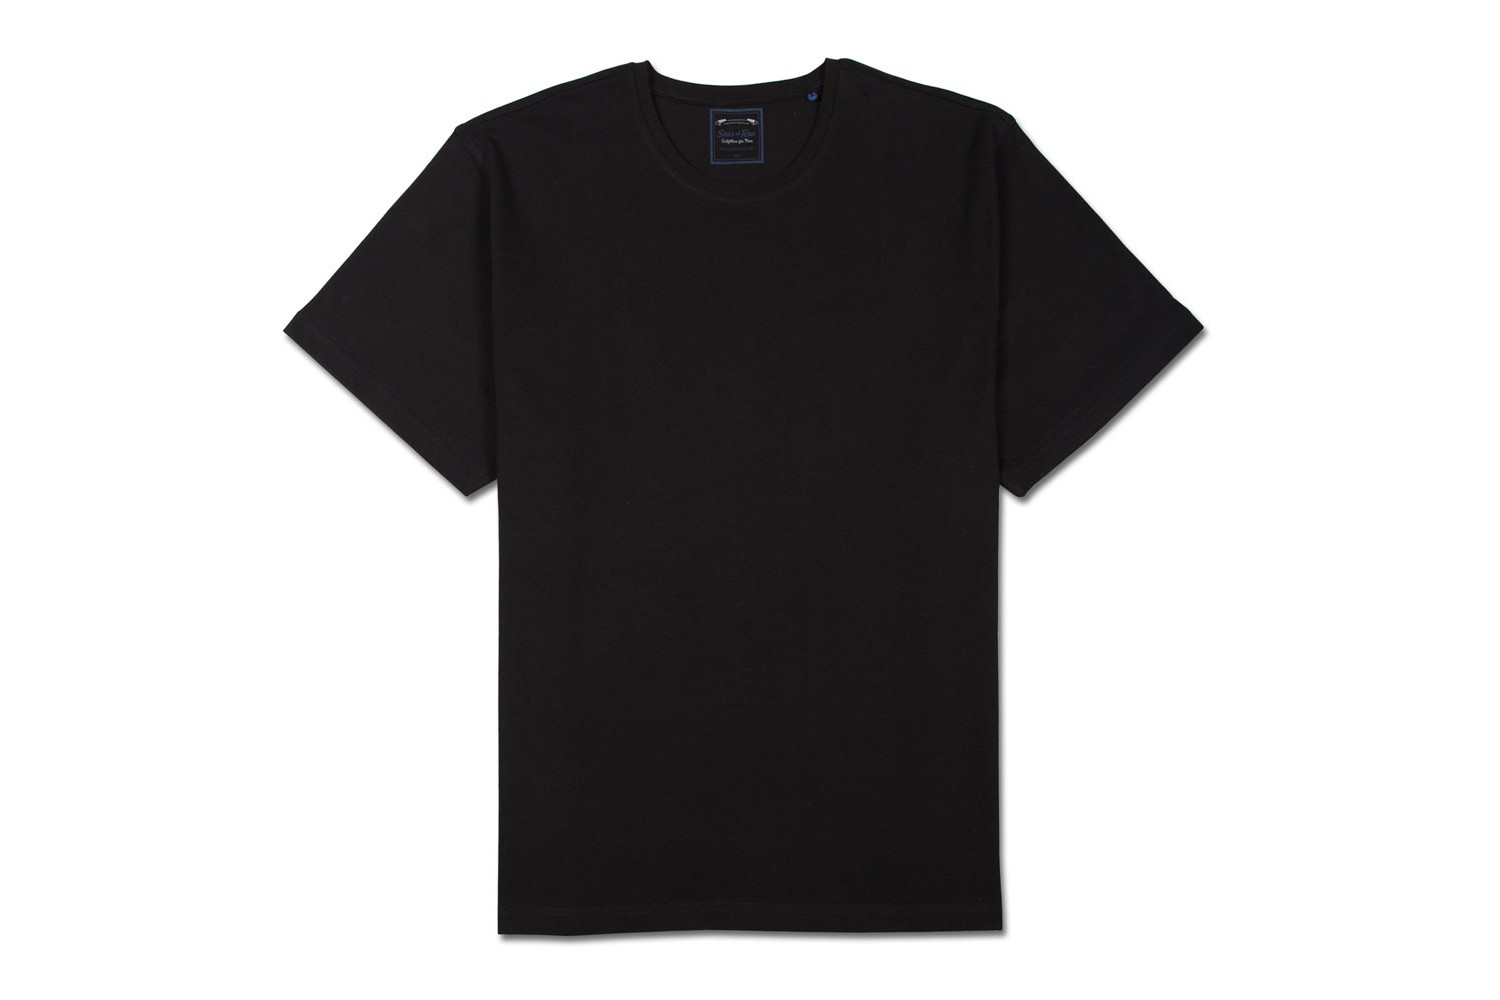 Plain Black T Shirt - ClipArt Best